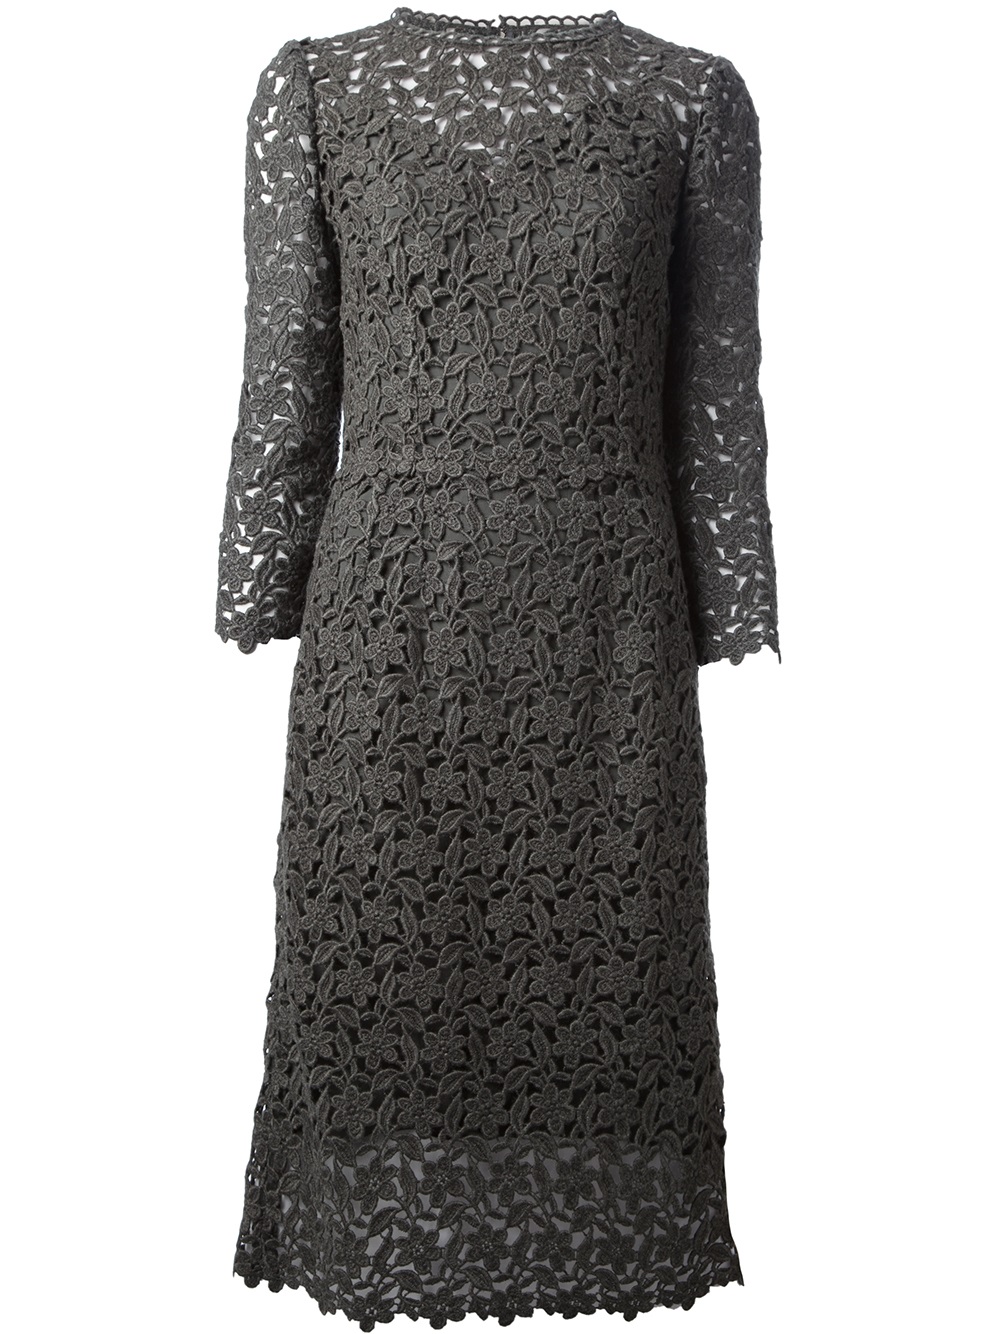 Lyst - Dolce & Gabbana Crochet Dress in Gray